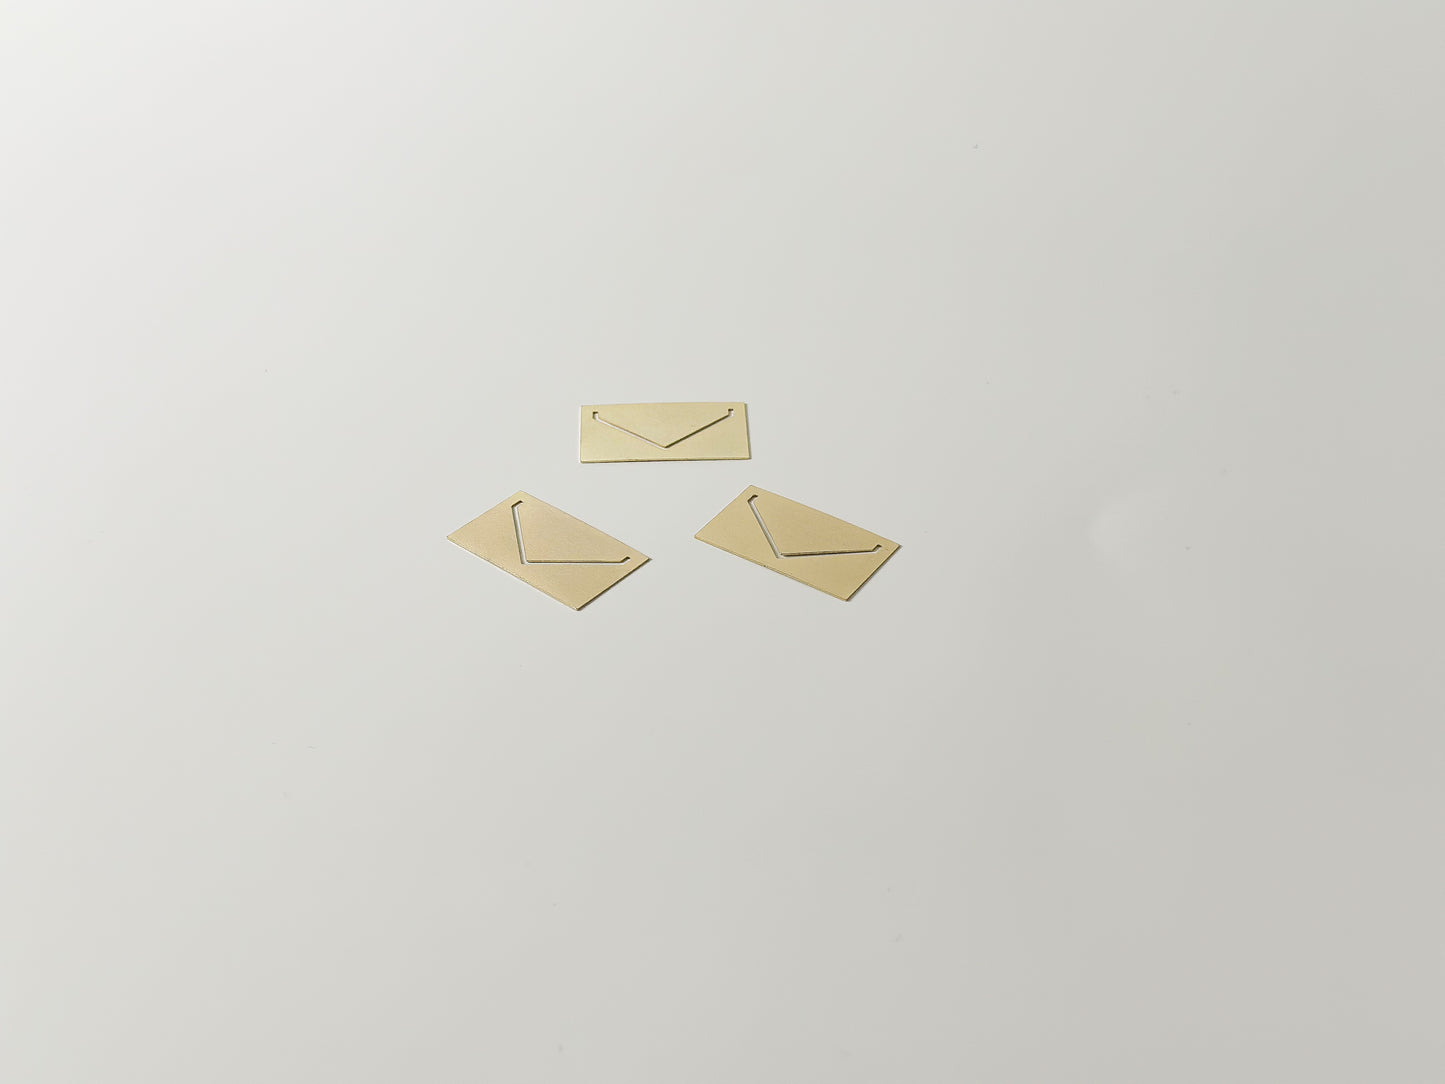 Smitten on Paper Gold Enamel Envelope Paperclips